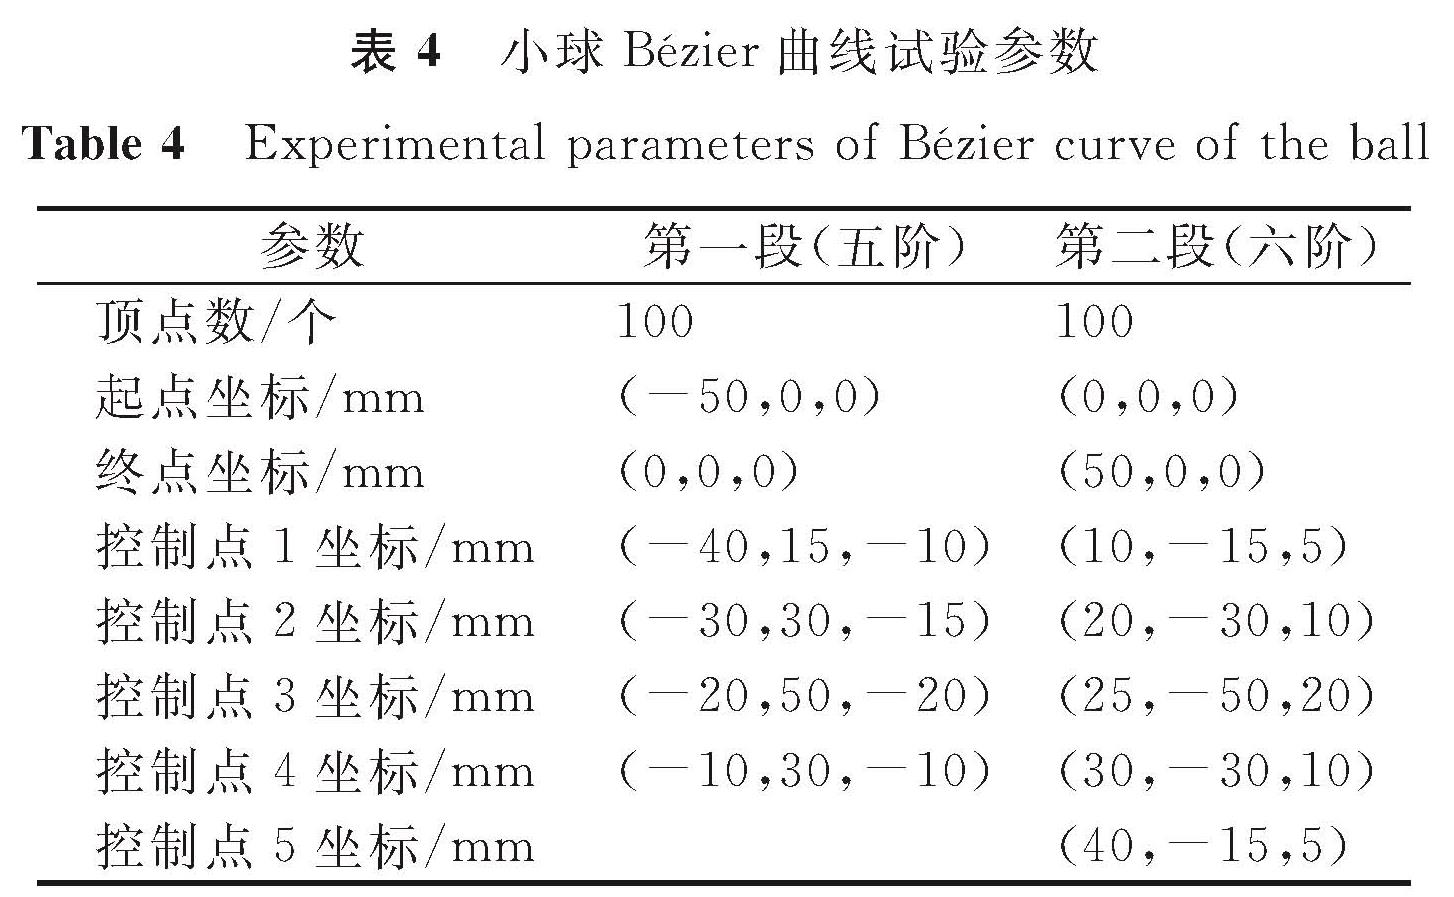 表4 小球Bézier曲线试验参数<br/>Table 4 Experimental parameters of Bézier curve of the ball